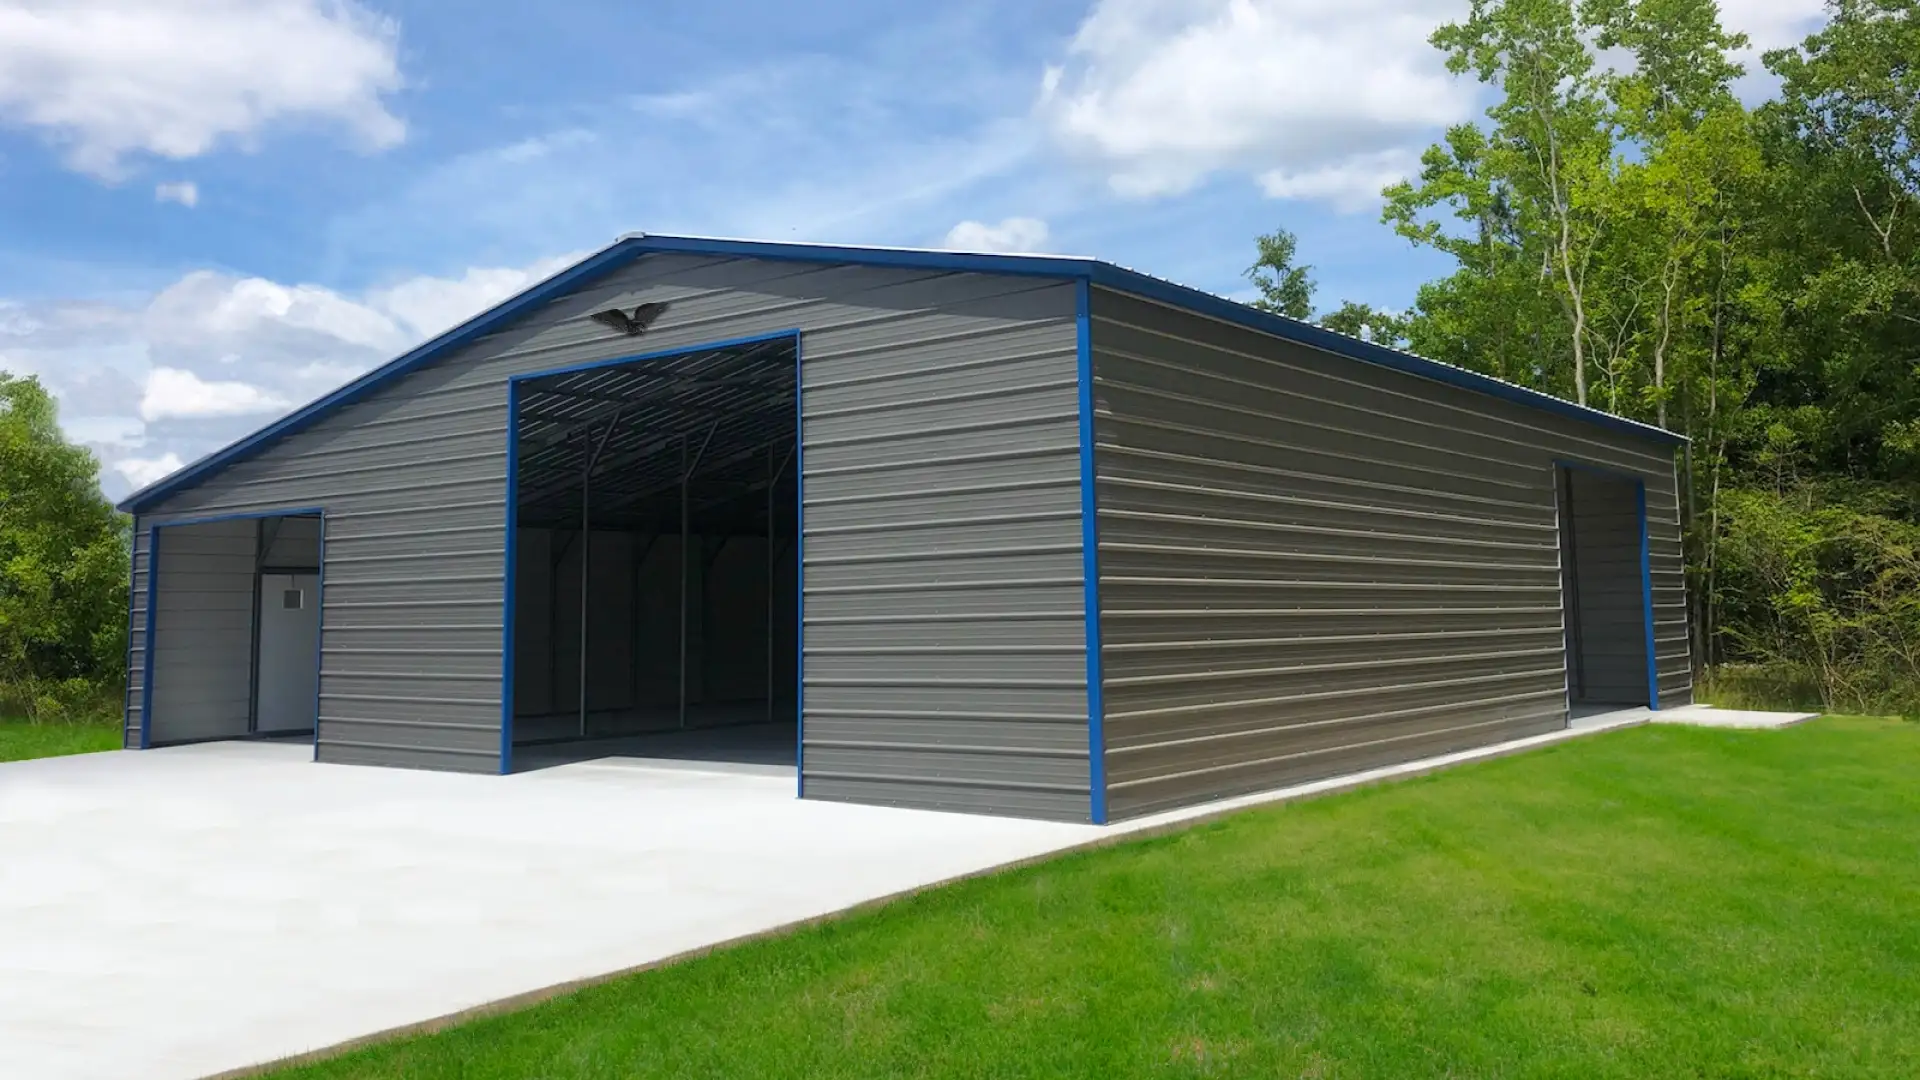 Metal large Garage with blue trim